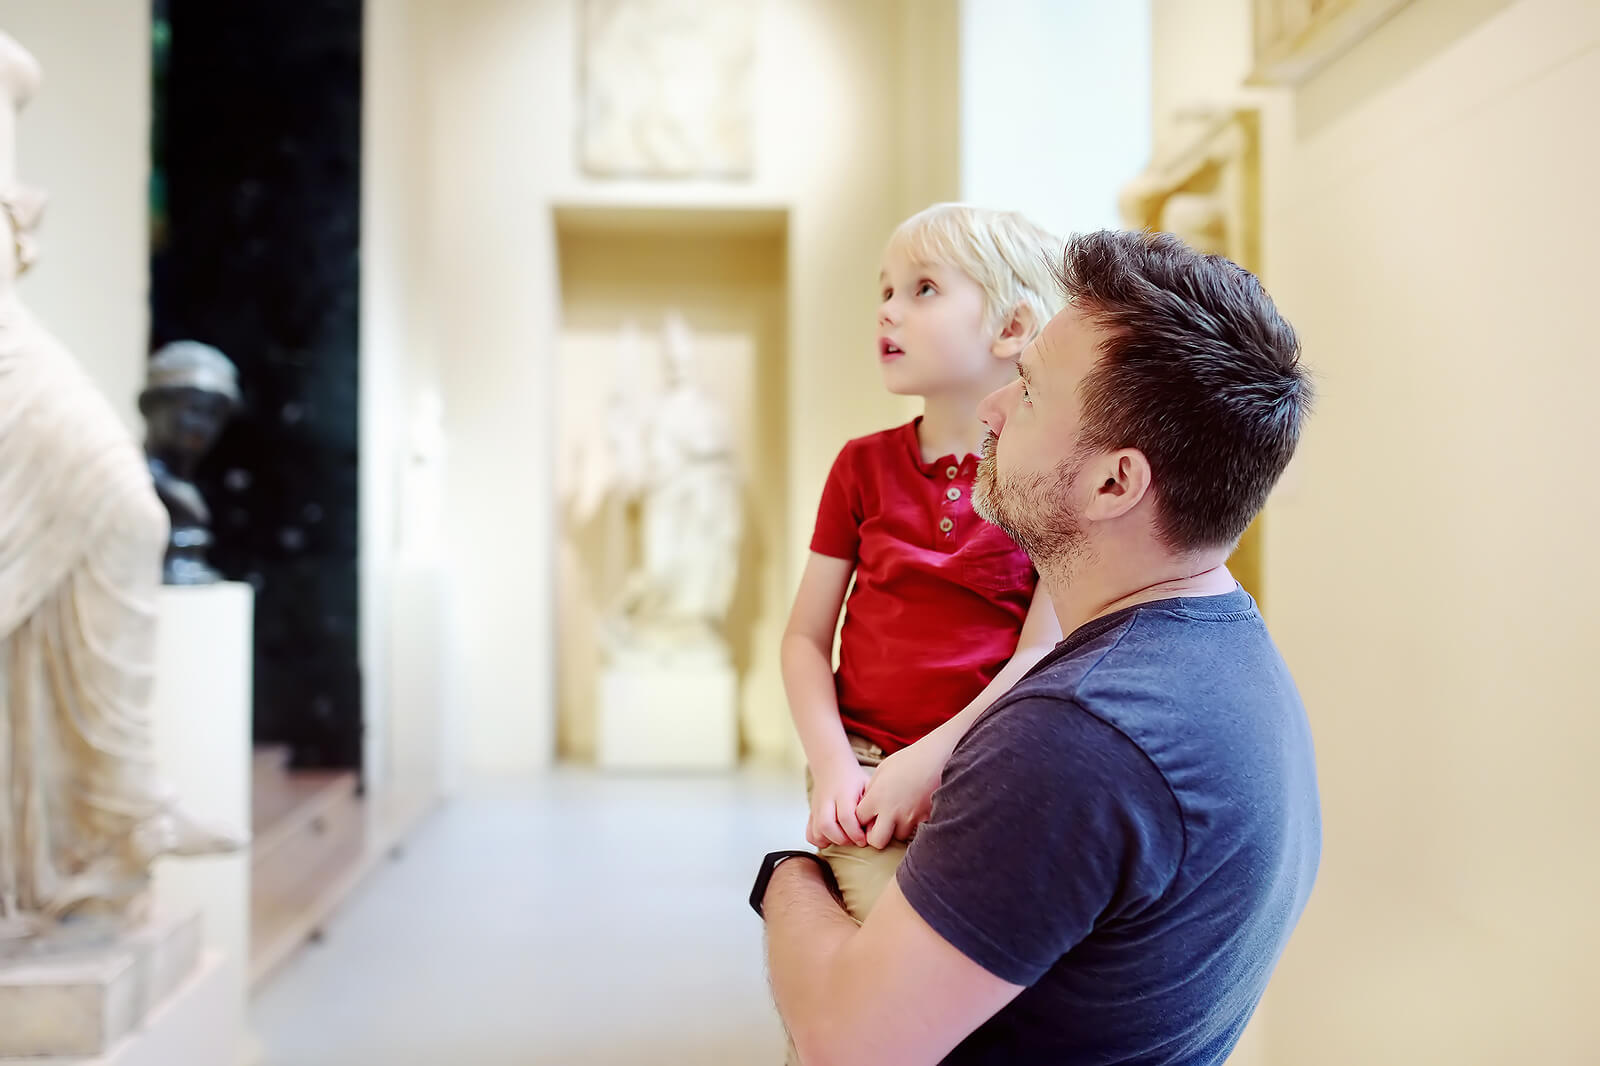 Padre con su hijo en un museo, fruto de la coparentalidad.